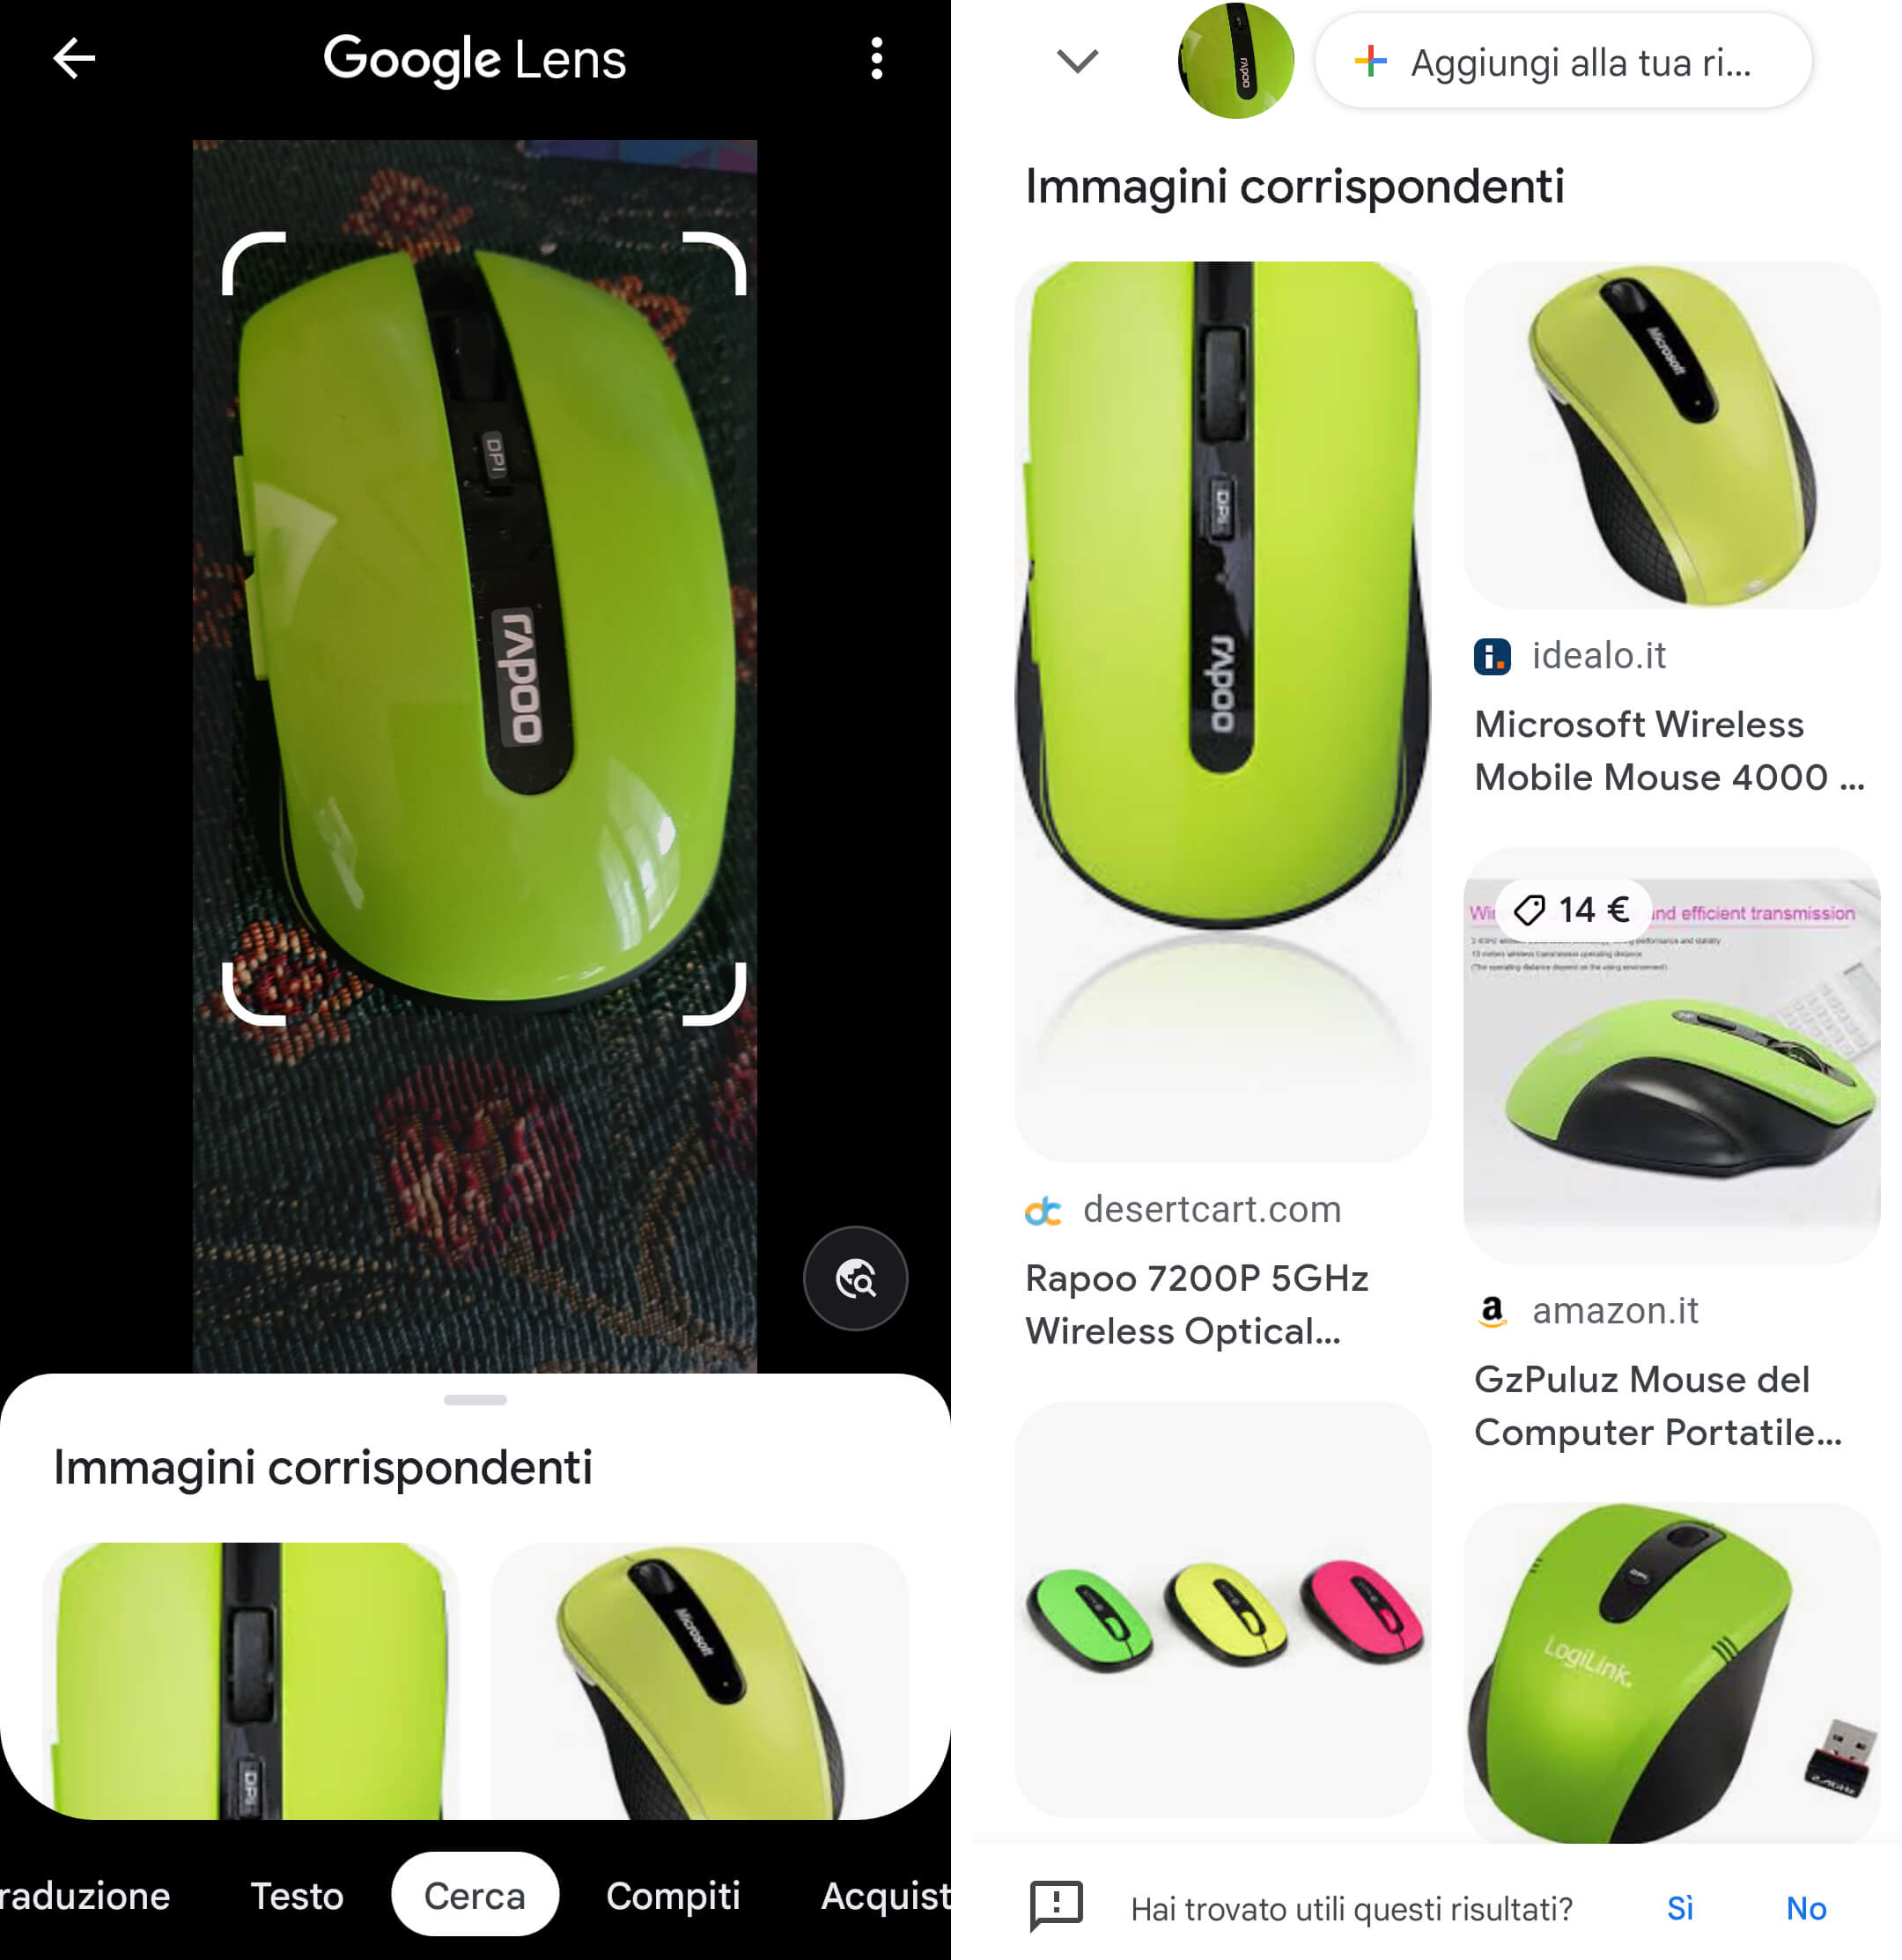 traduzione testi da foto app identificazione oggetto mouse google lens